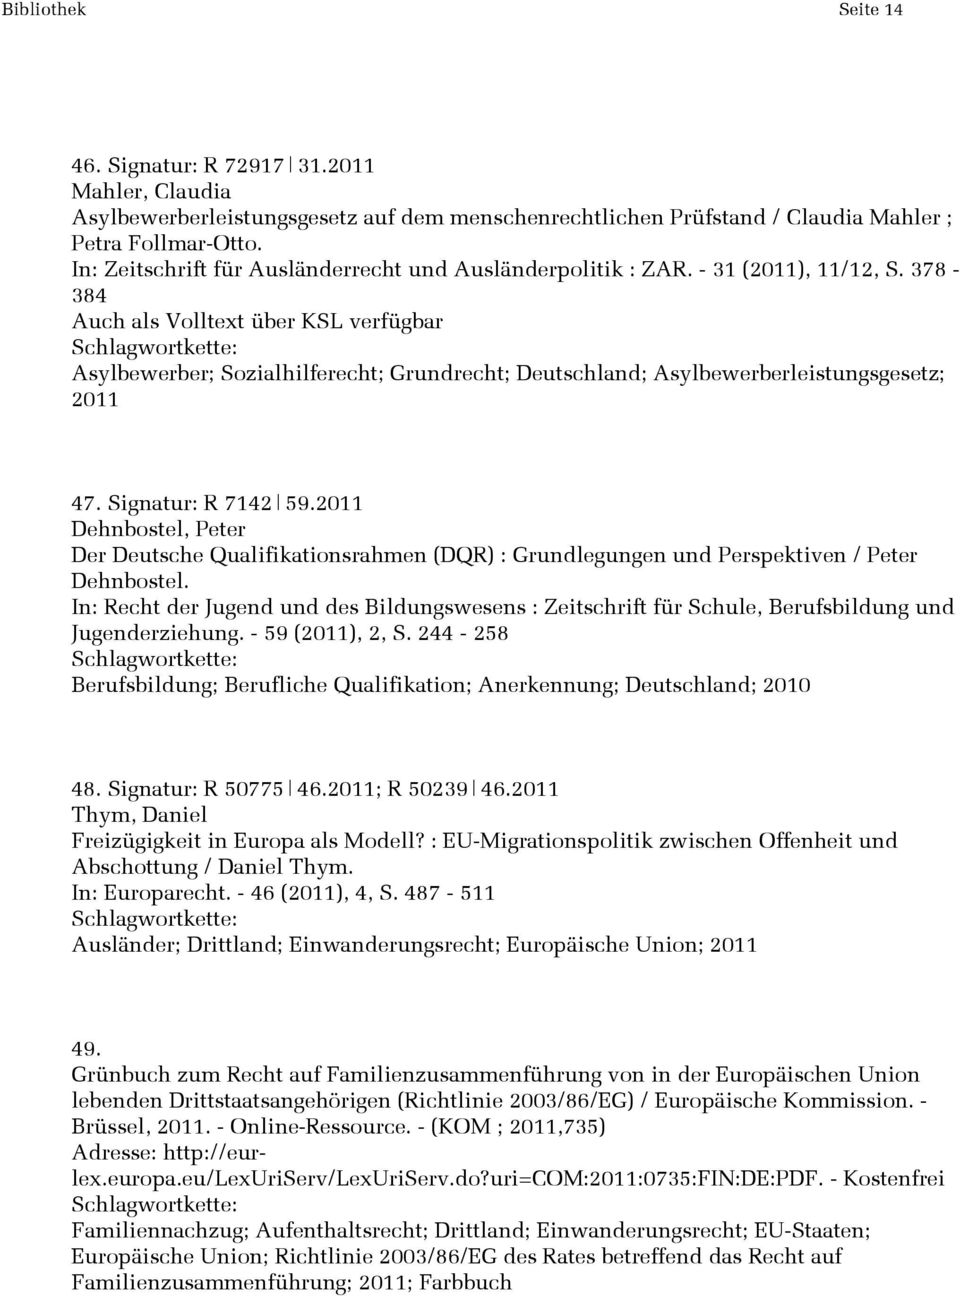 Signatur: R 7142 59.2011 Dehnbostel, Peter Der Deutsche Qualifikationsrahmen (DQR) : Grundlegungen und Perspektiven / Peter Dehnbostel.